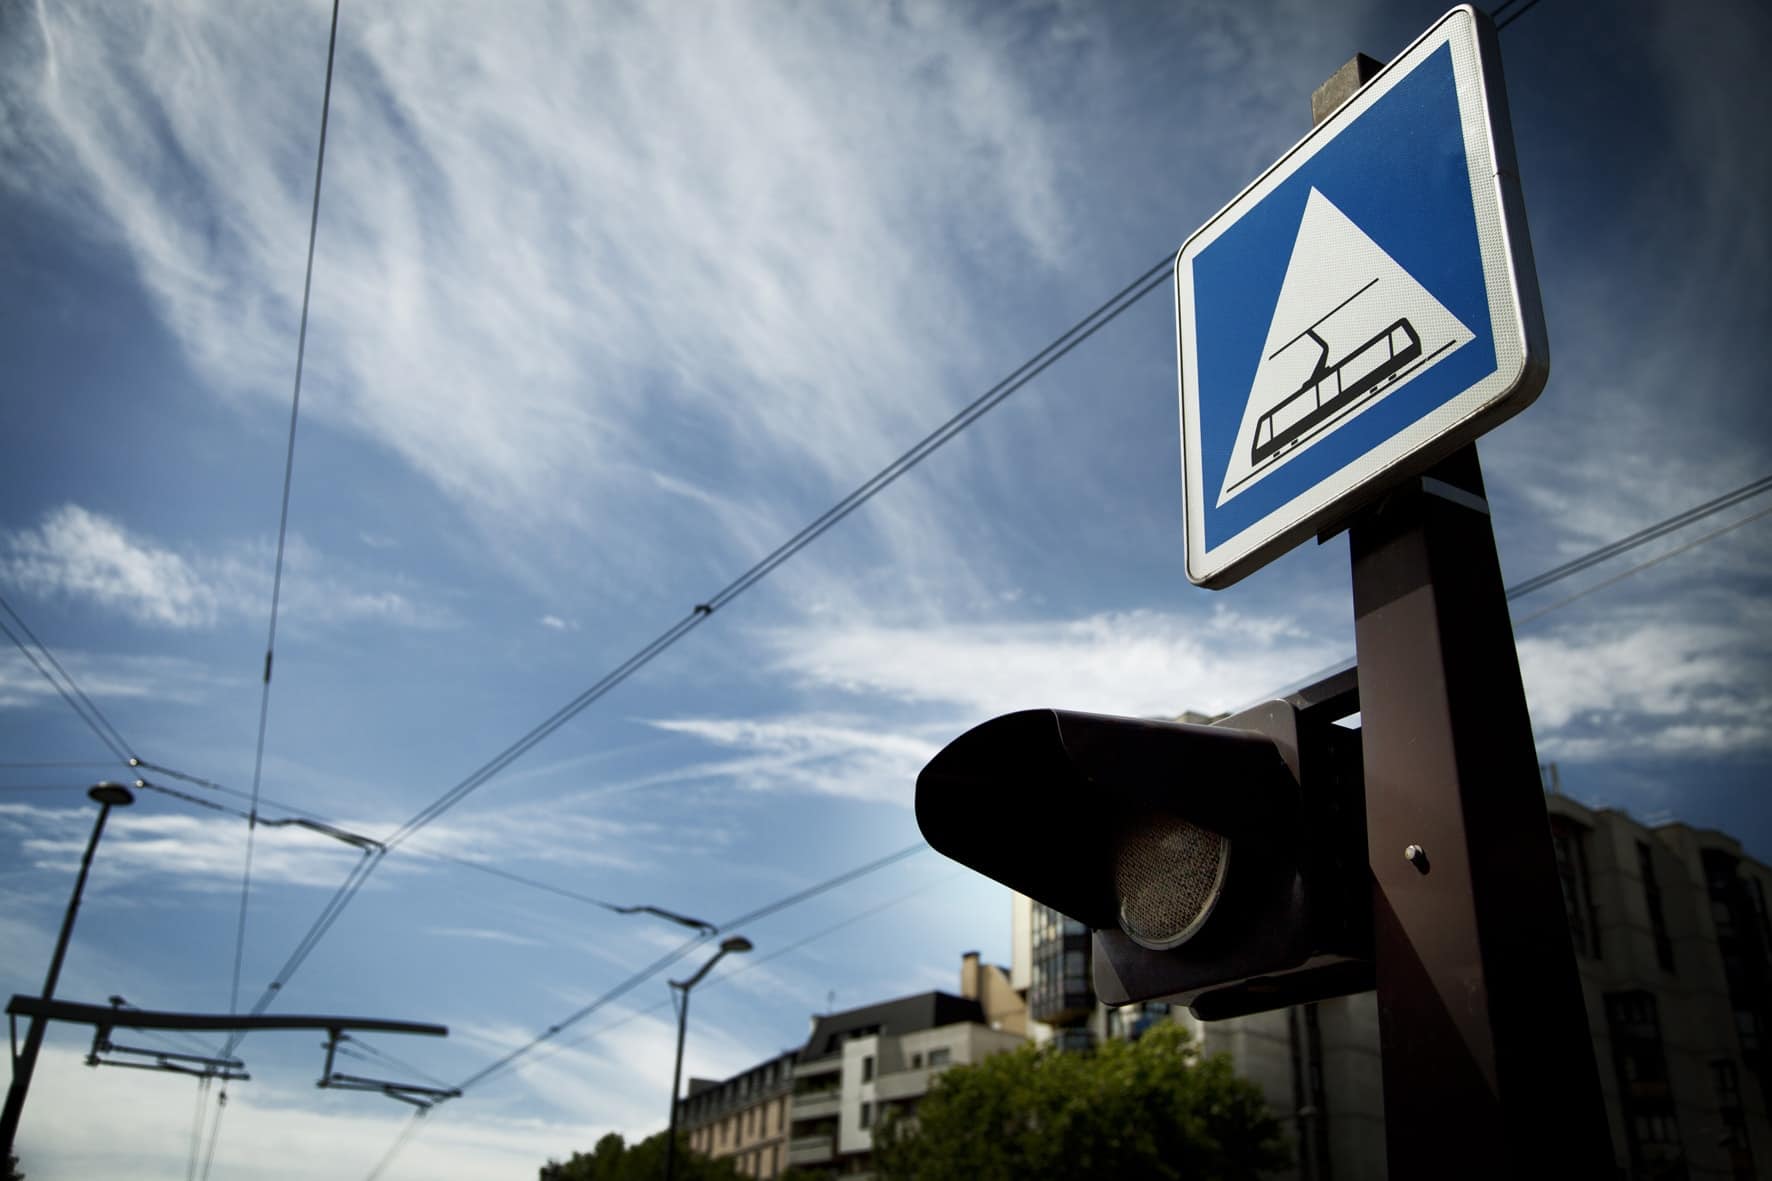 lignes de tramway parisien et panneaux de signalisation